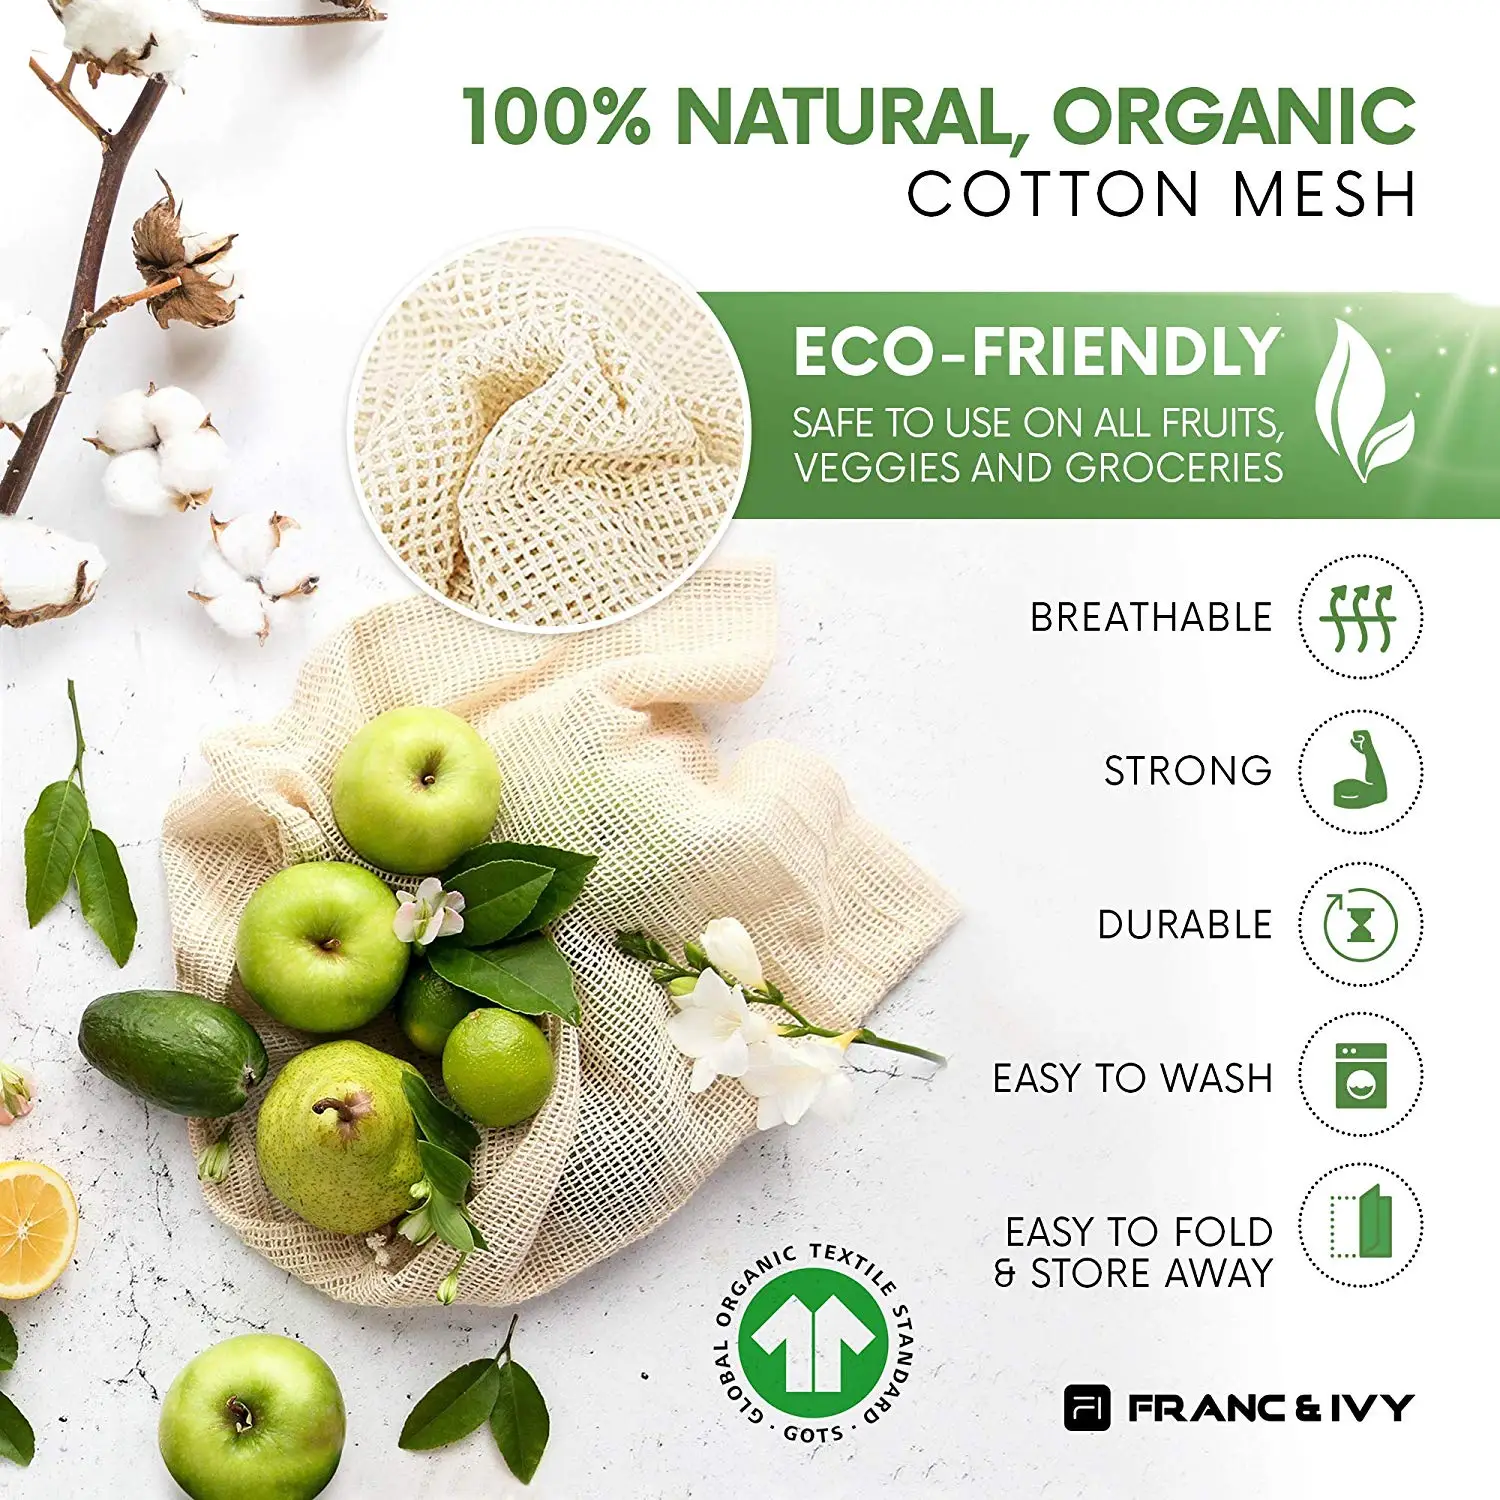 

9/12pcs vegetable fruit bag,storage bag Reusable Produce Bags,Eco-Friendly,100% Organic Cotton Mesh Bags,Bio-degradable Kitchen